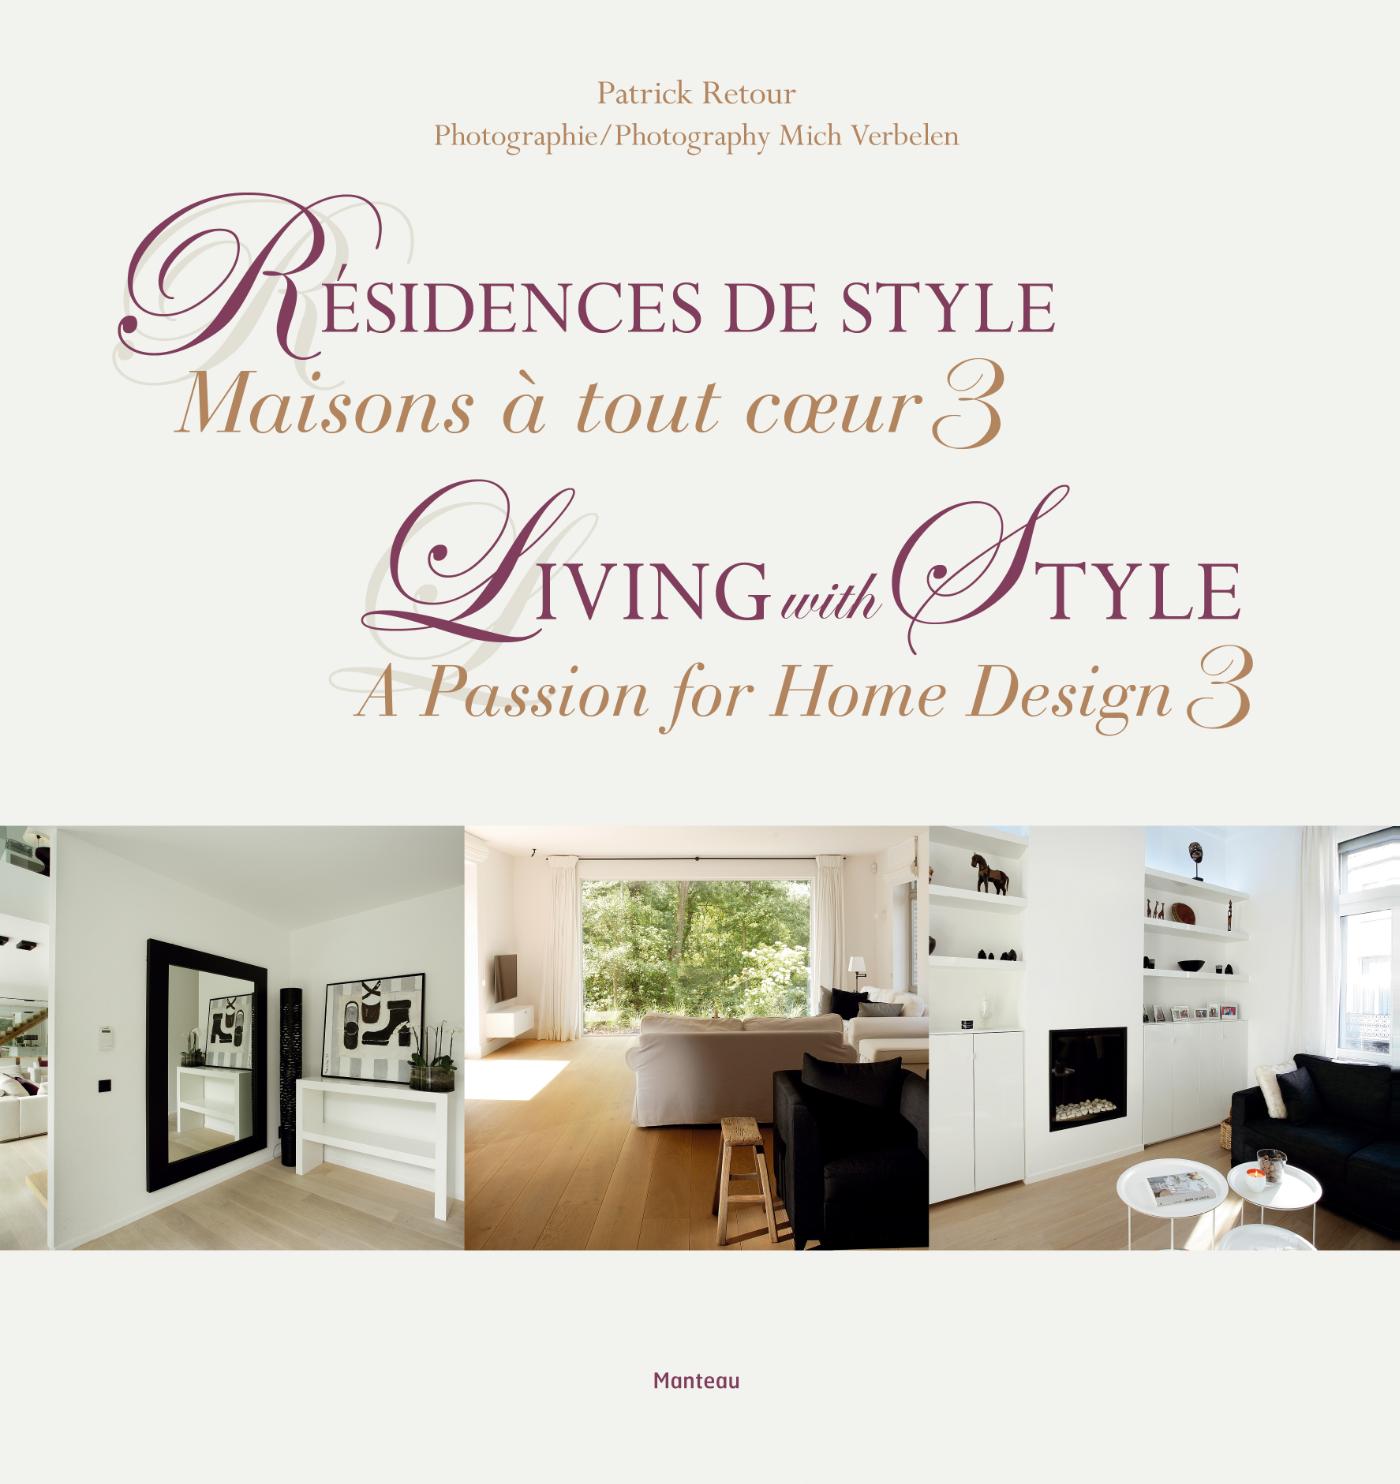 03 Résidences de style - Living with Style - Patrick Retour